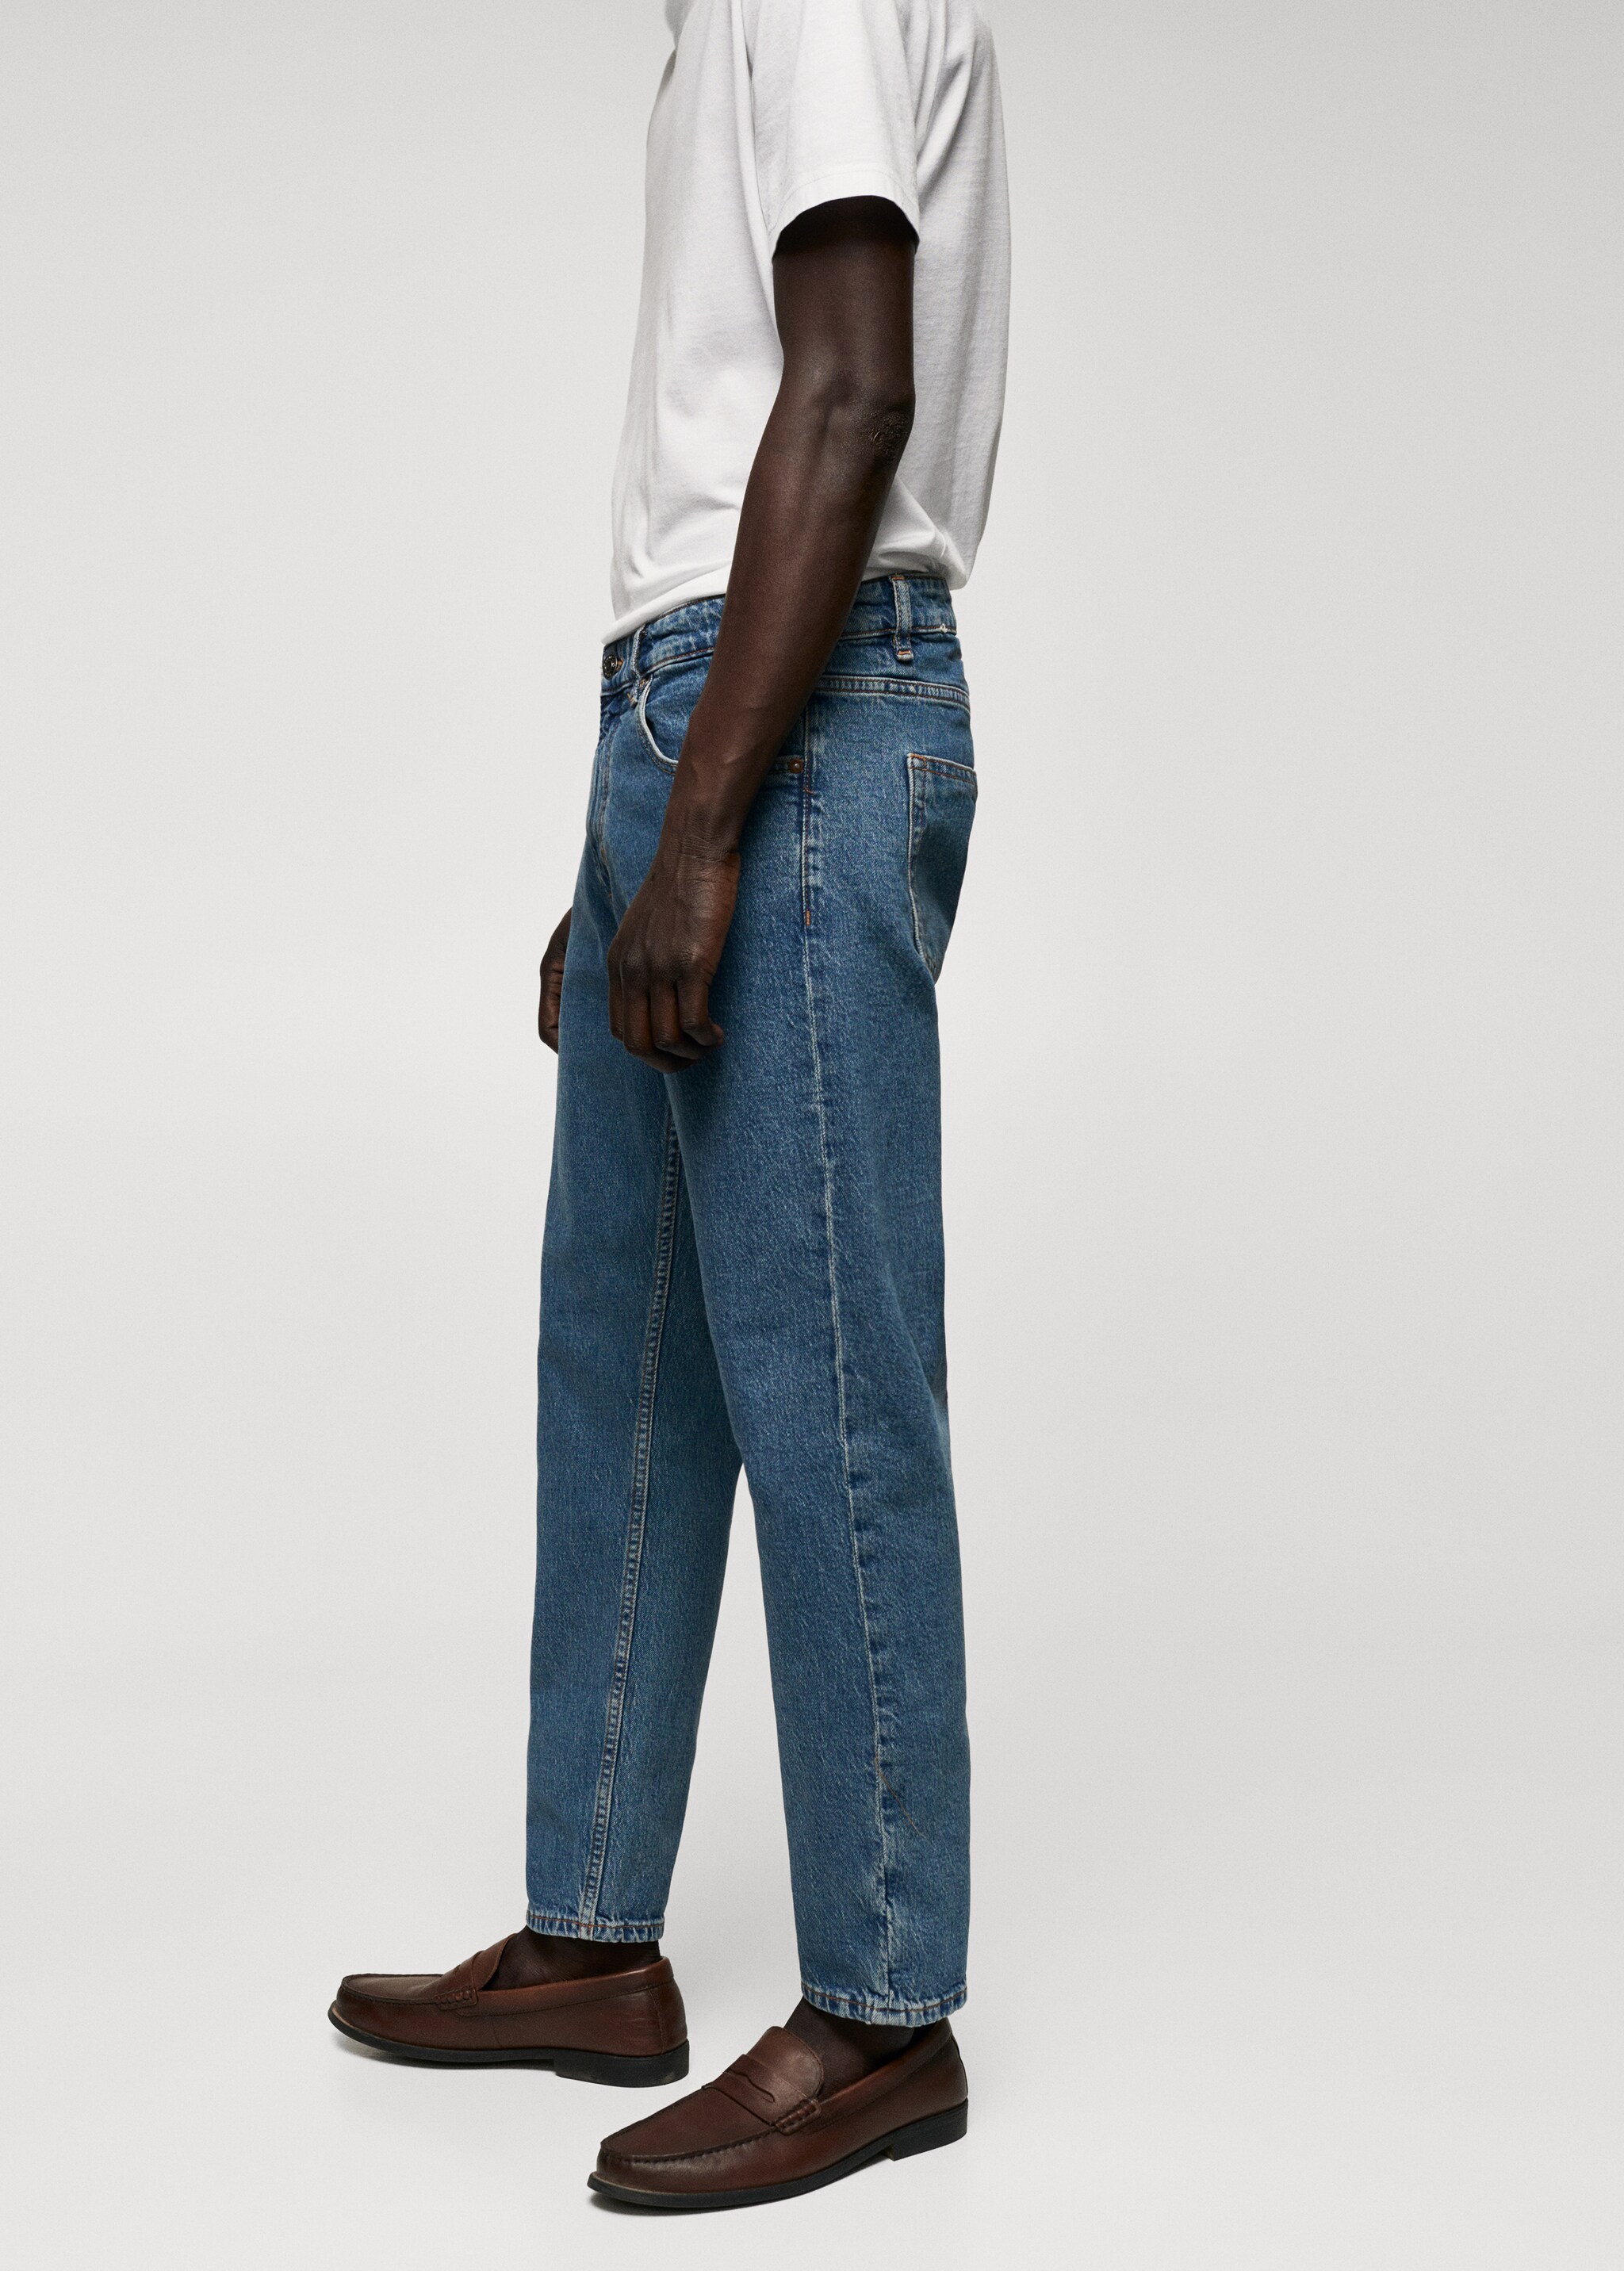 Jeans Ben tapered cropped - Artikkeldetalj 2